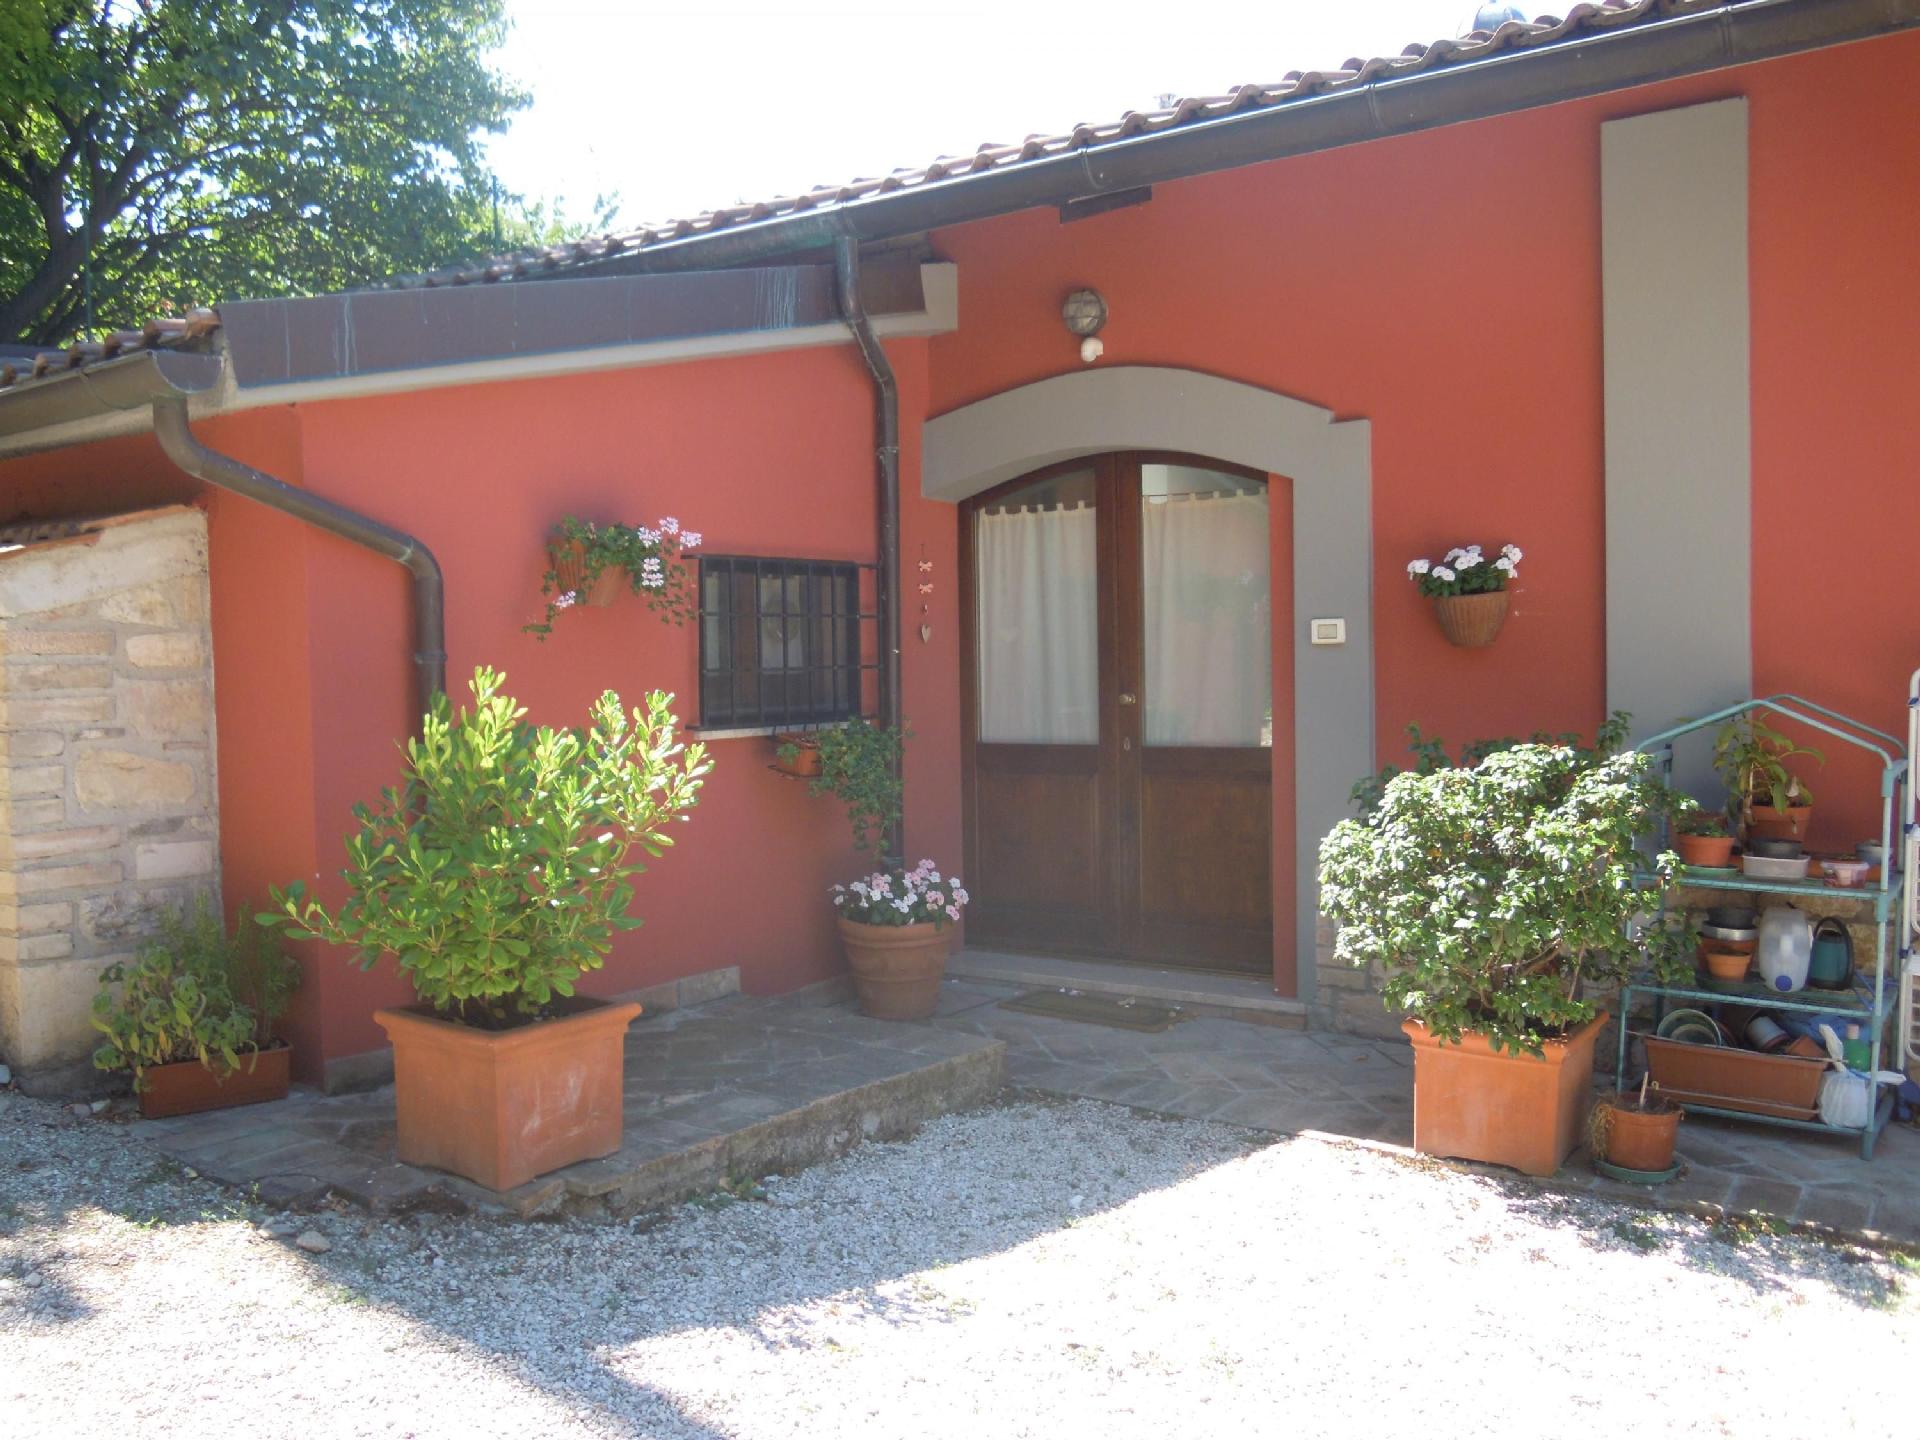 Appartement in Assisi mit Garten Ferienhaus in Italien